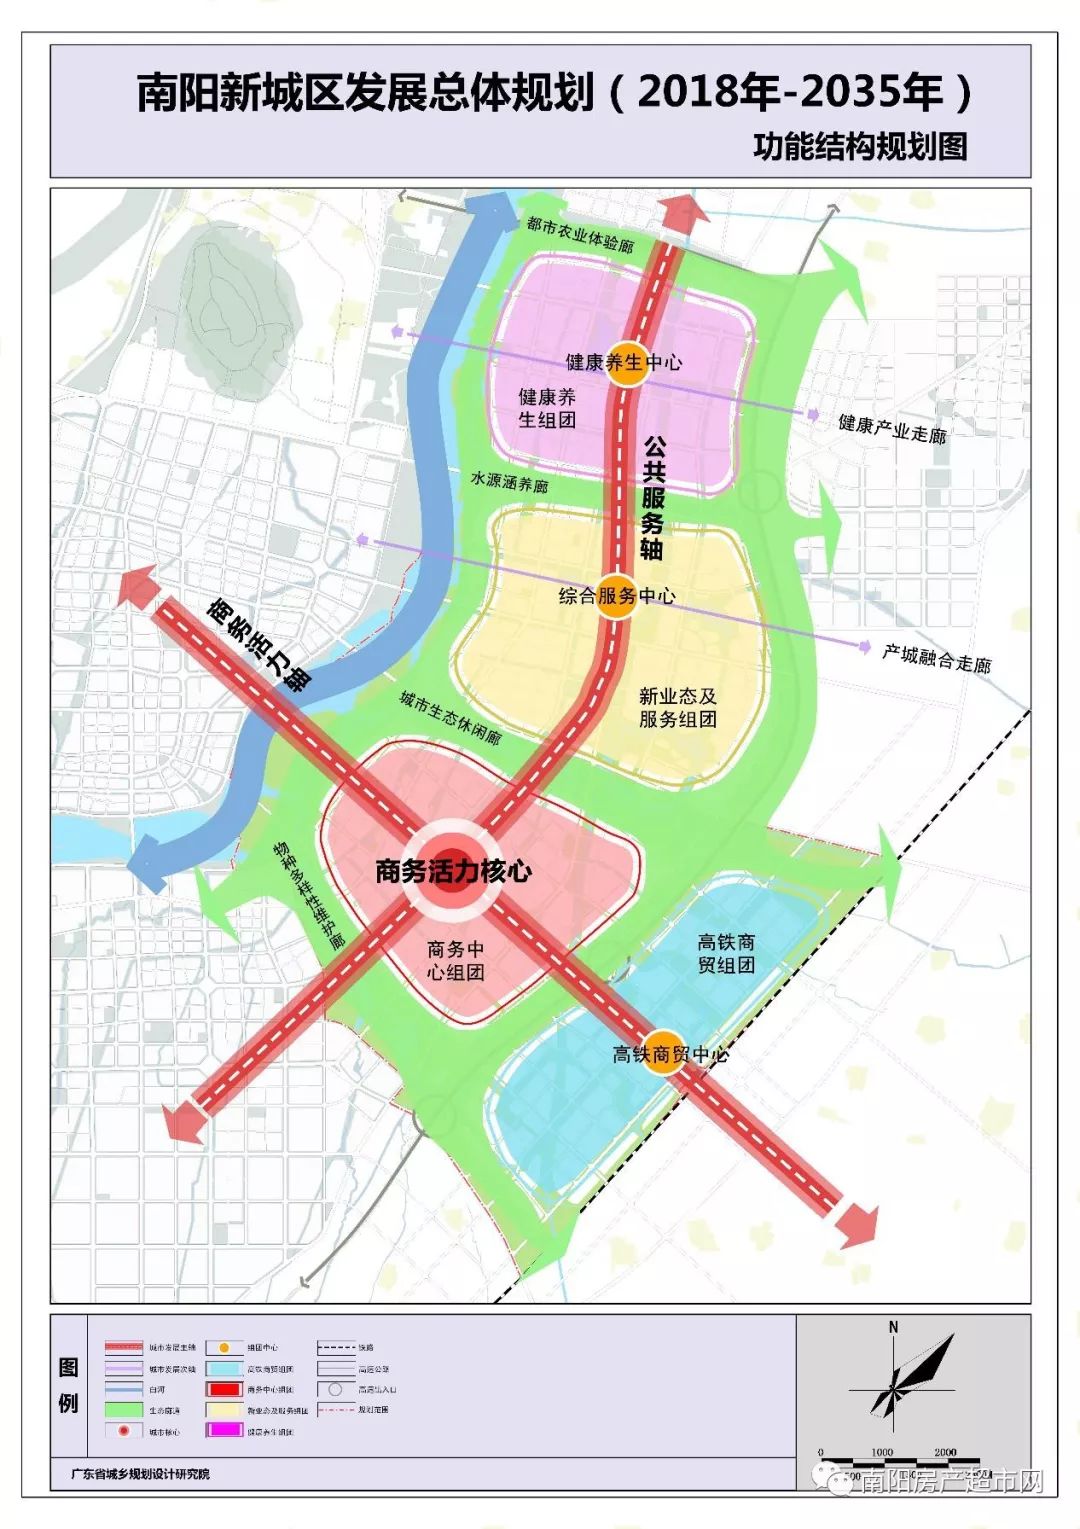 【城事】南阳市城市总体规划(2018-2035年)公示文件